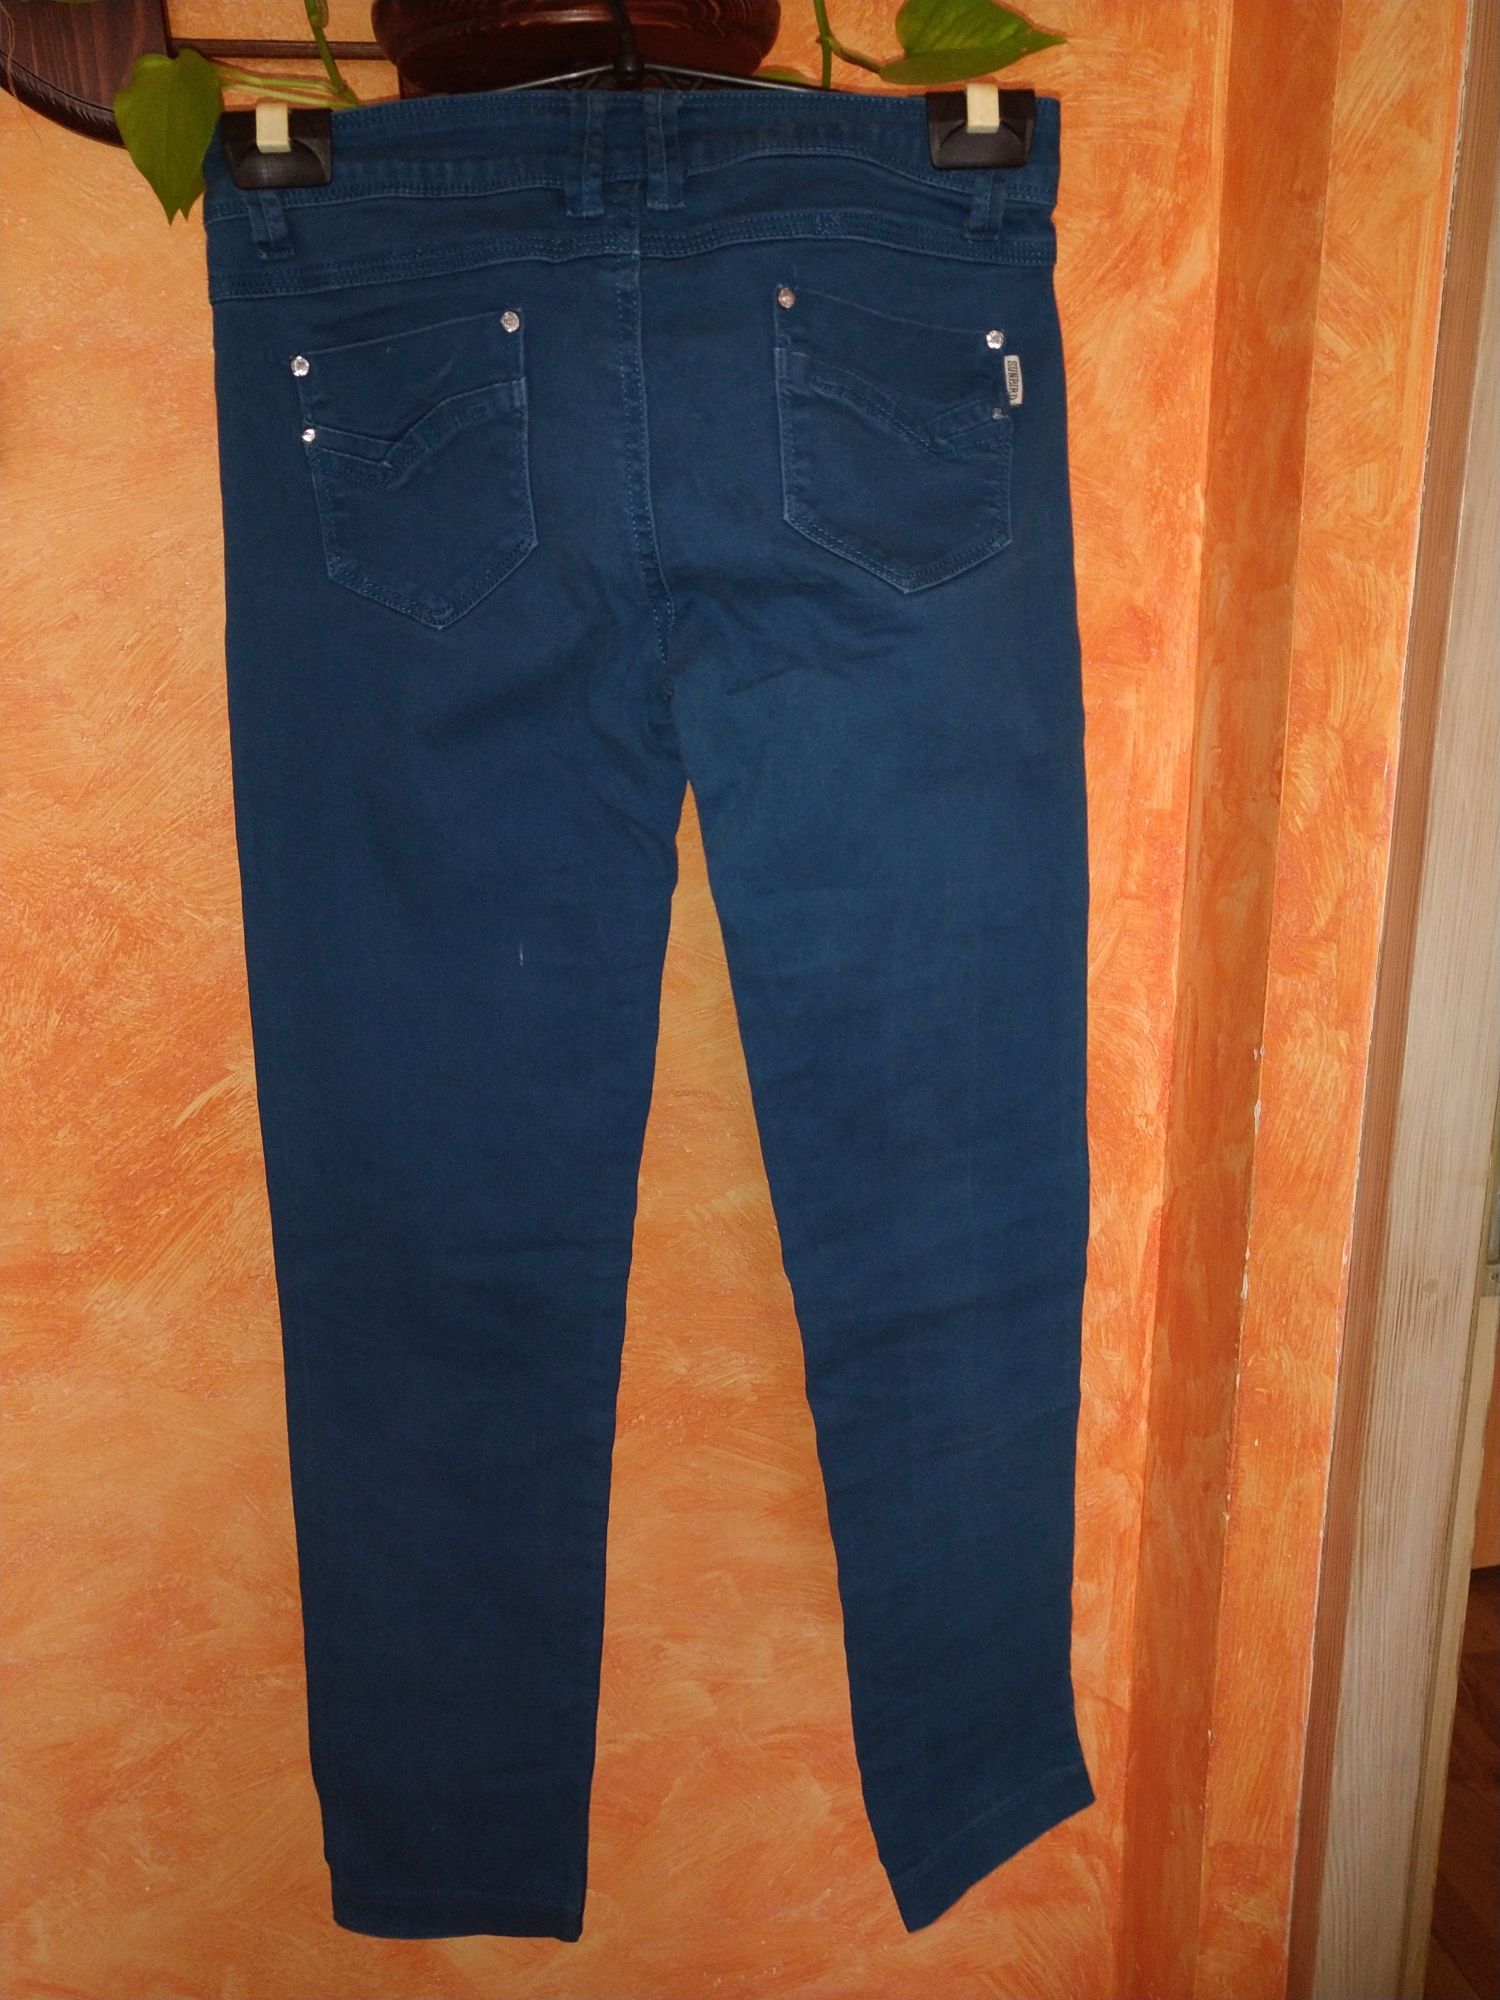 Spodnie  niebieskie bawełniane rozmiar S bądź XS